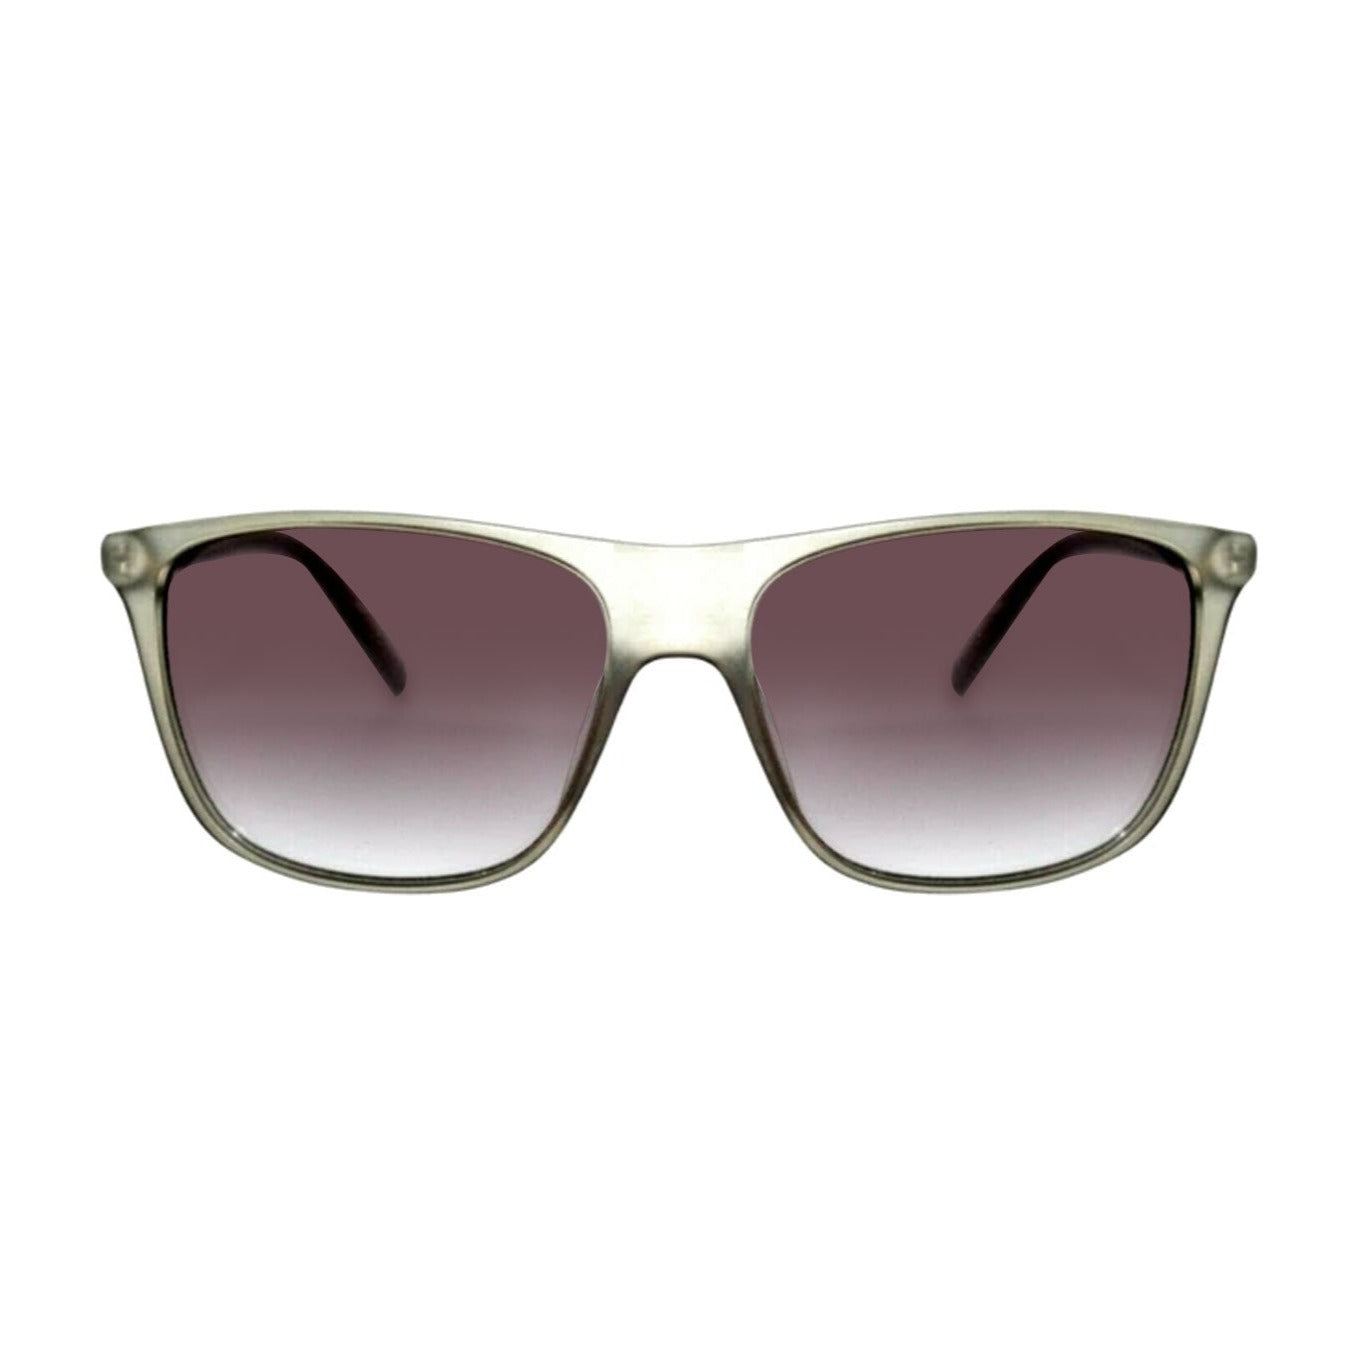 Guess occhiali da sole | Modello GU6957 - Grigio